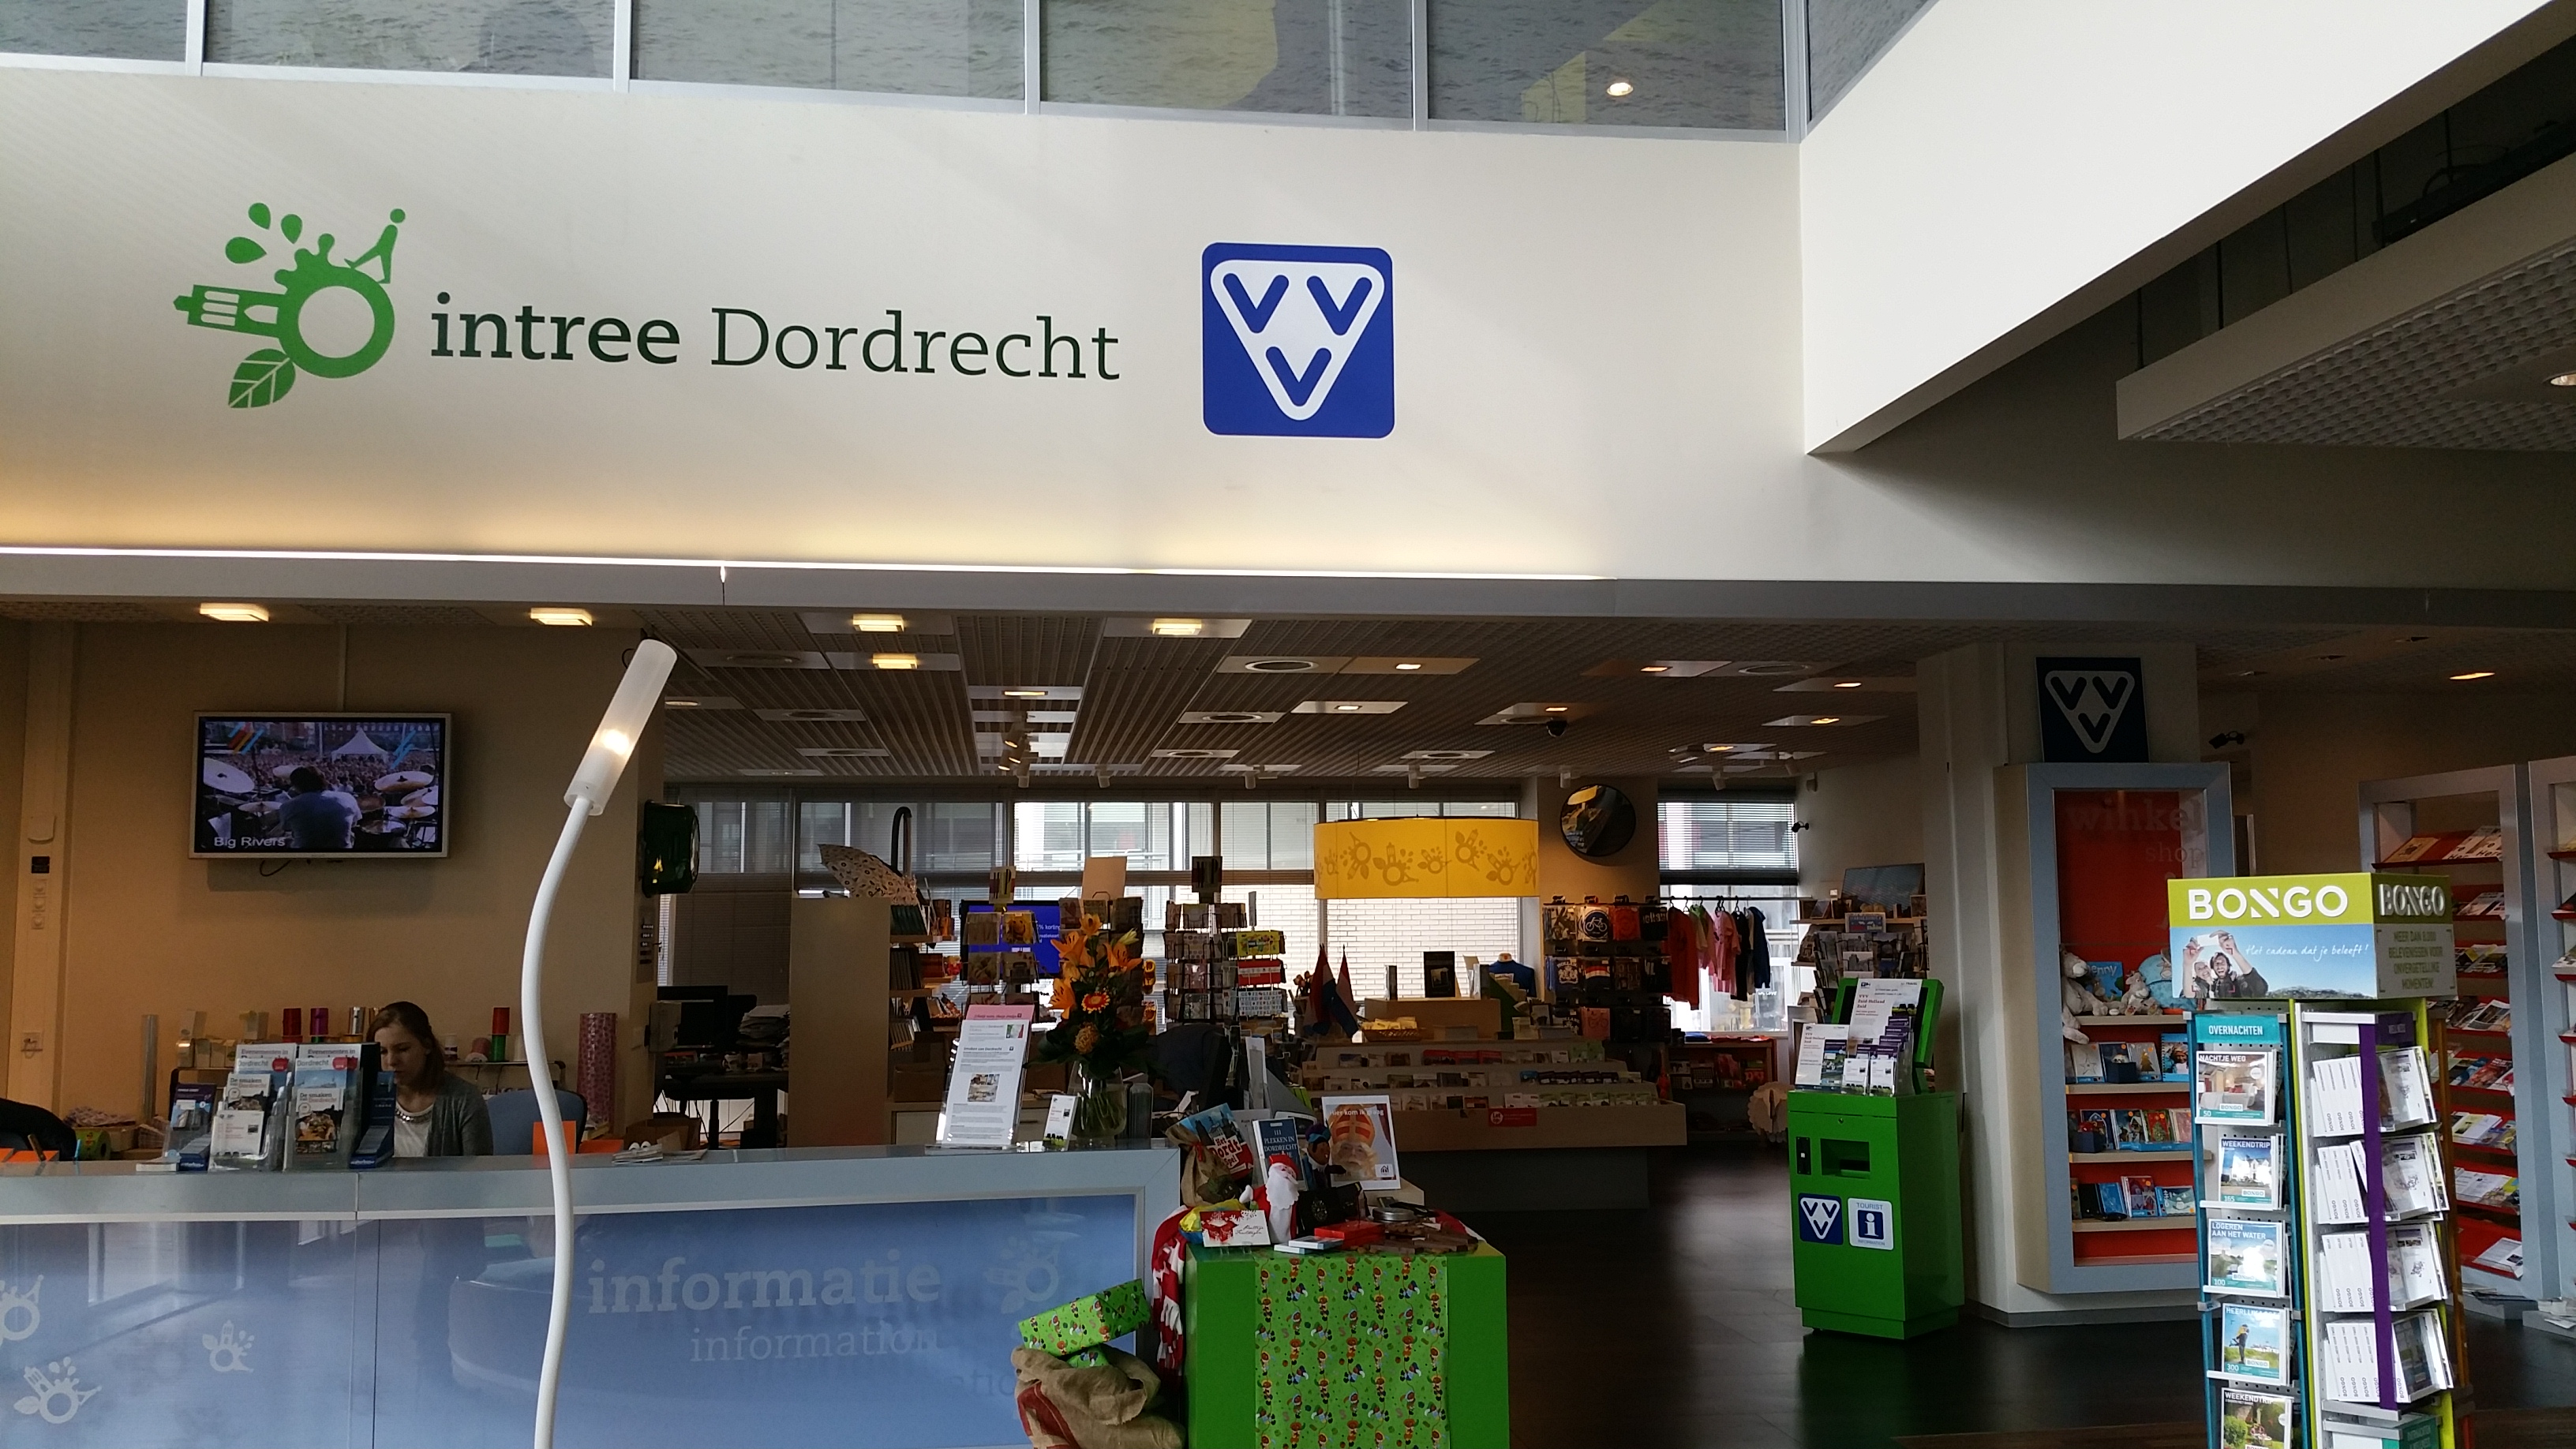 Intree Dordrecht (VVV)